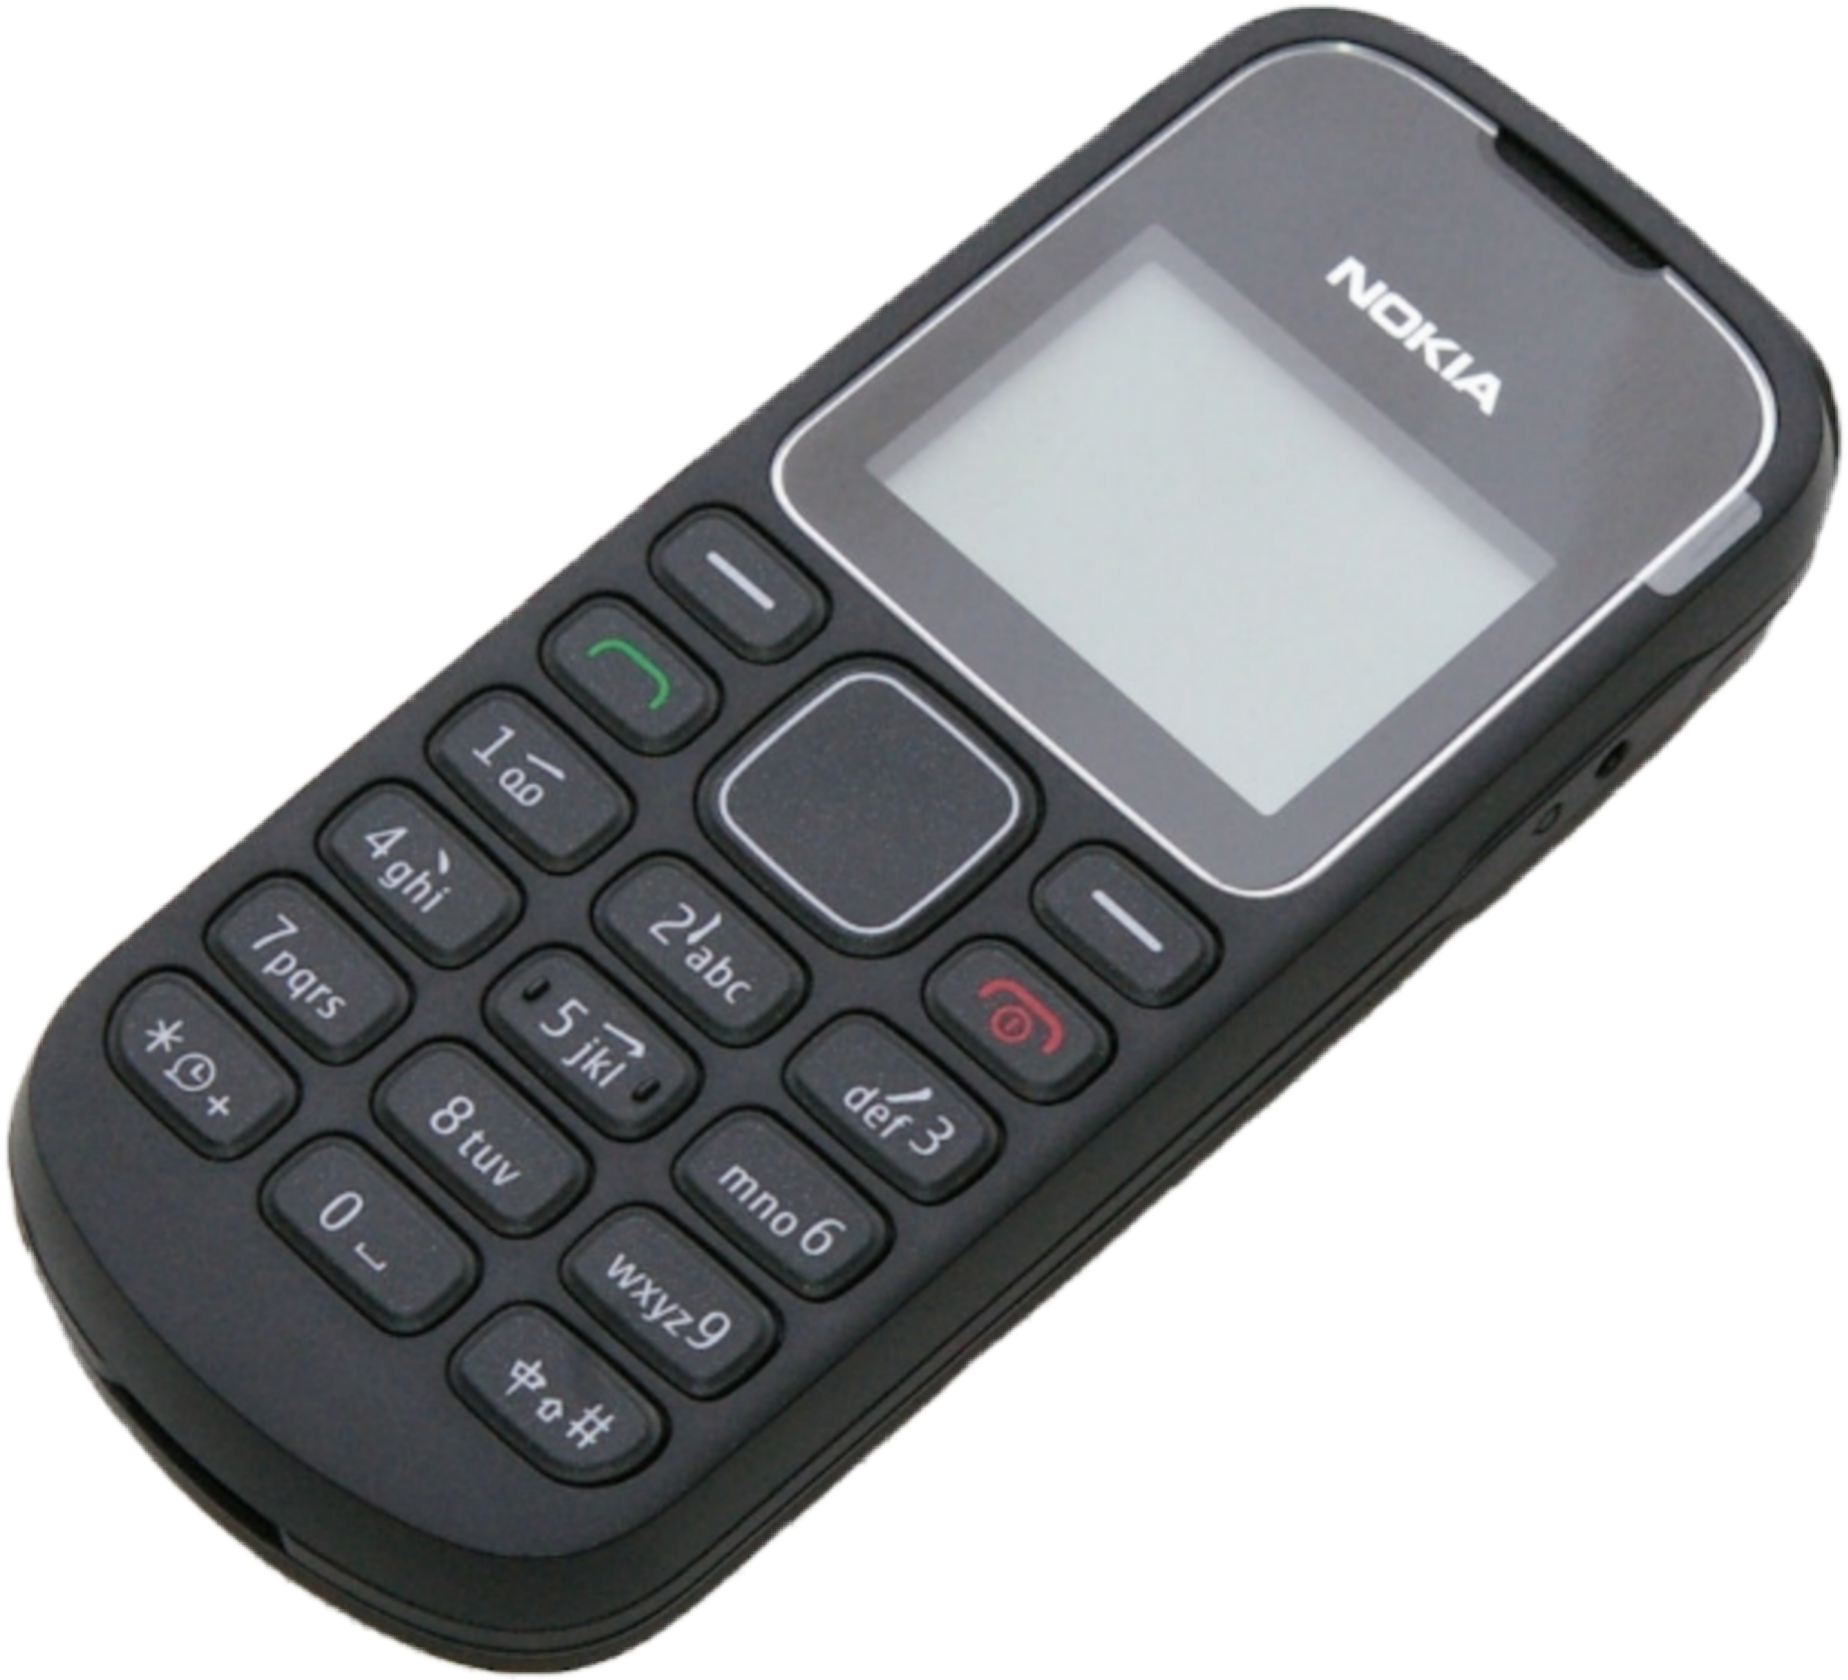 Nokia mobile phone. Nokia 1280 Nokia. Nokia 1280 mobile. Nokia GSM 1280. Nokia 9010.